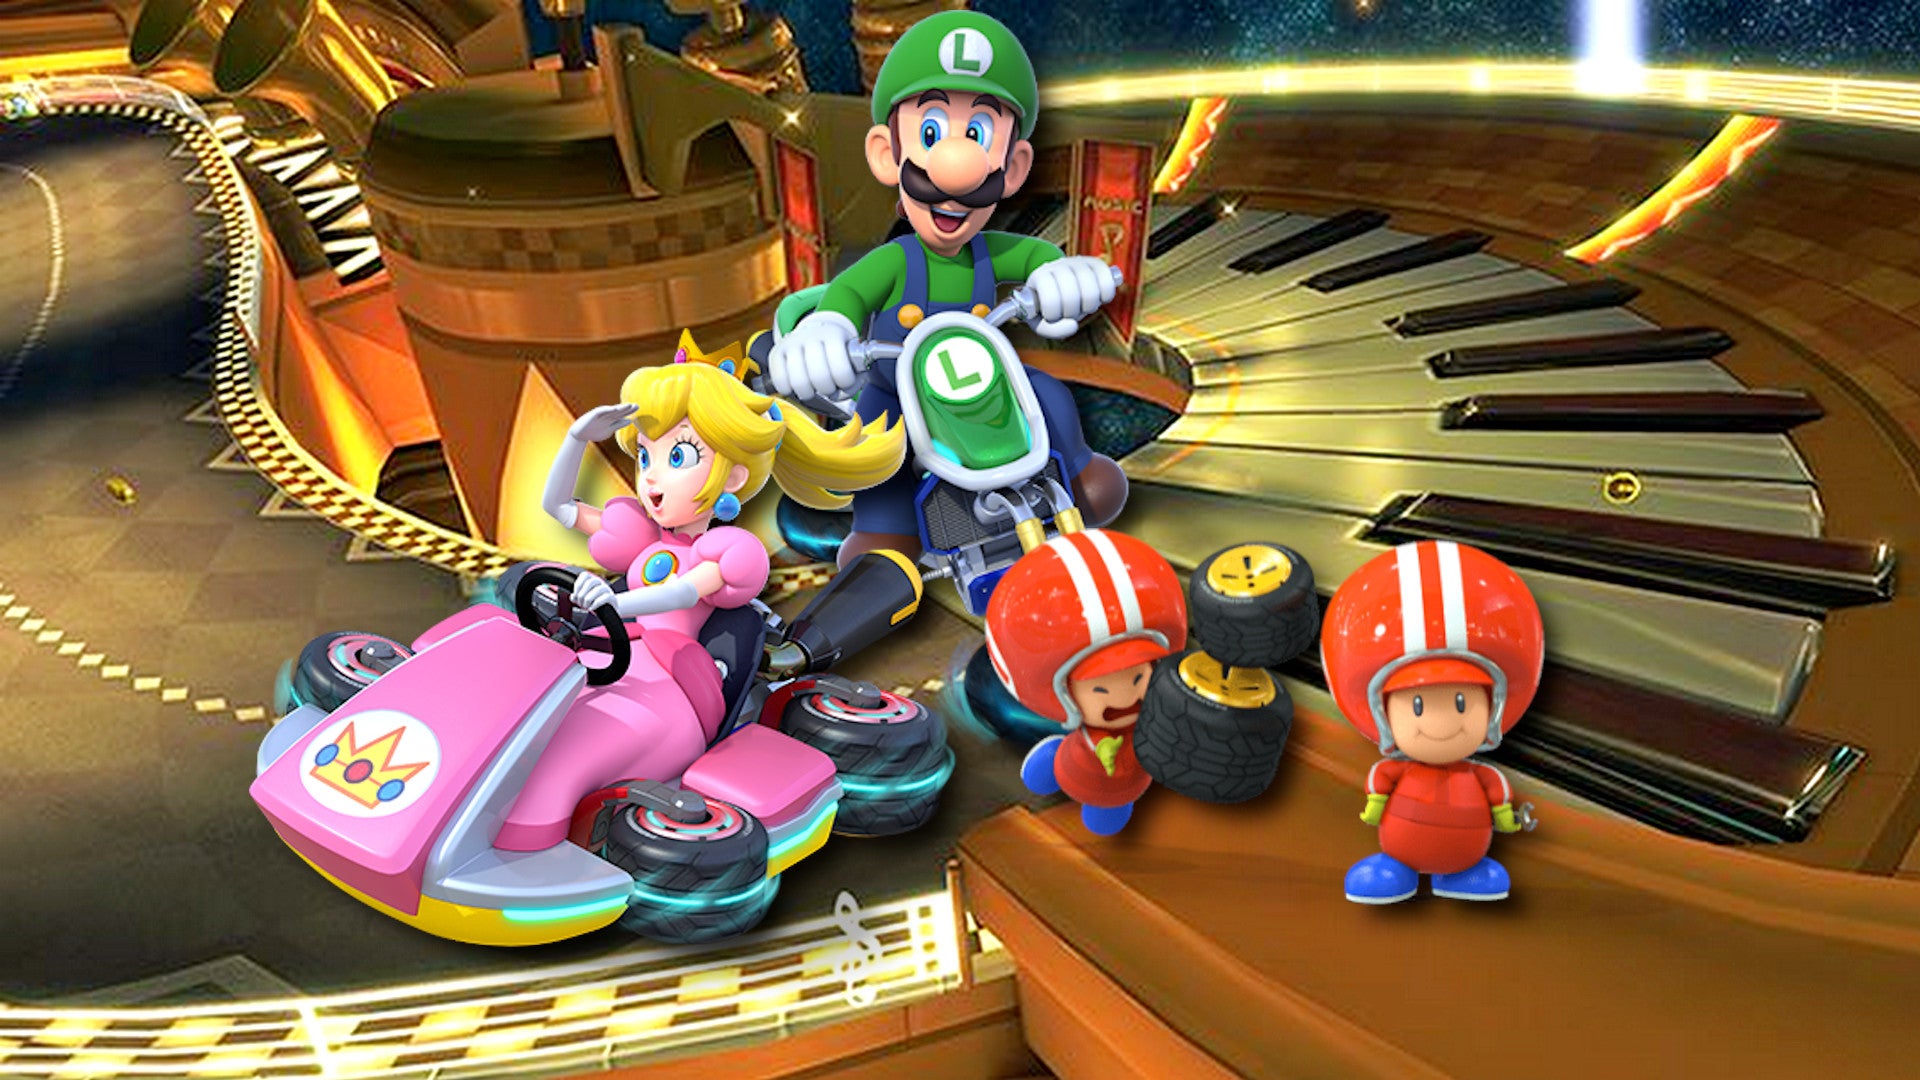 Bilder zu Alles über den Mario Kart 8 Deluxe Booster-Streckenpass - Release, Preis und bestätigte Kurse